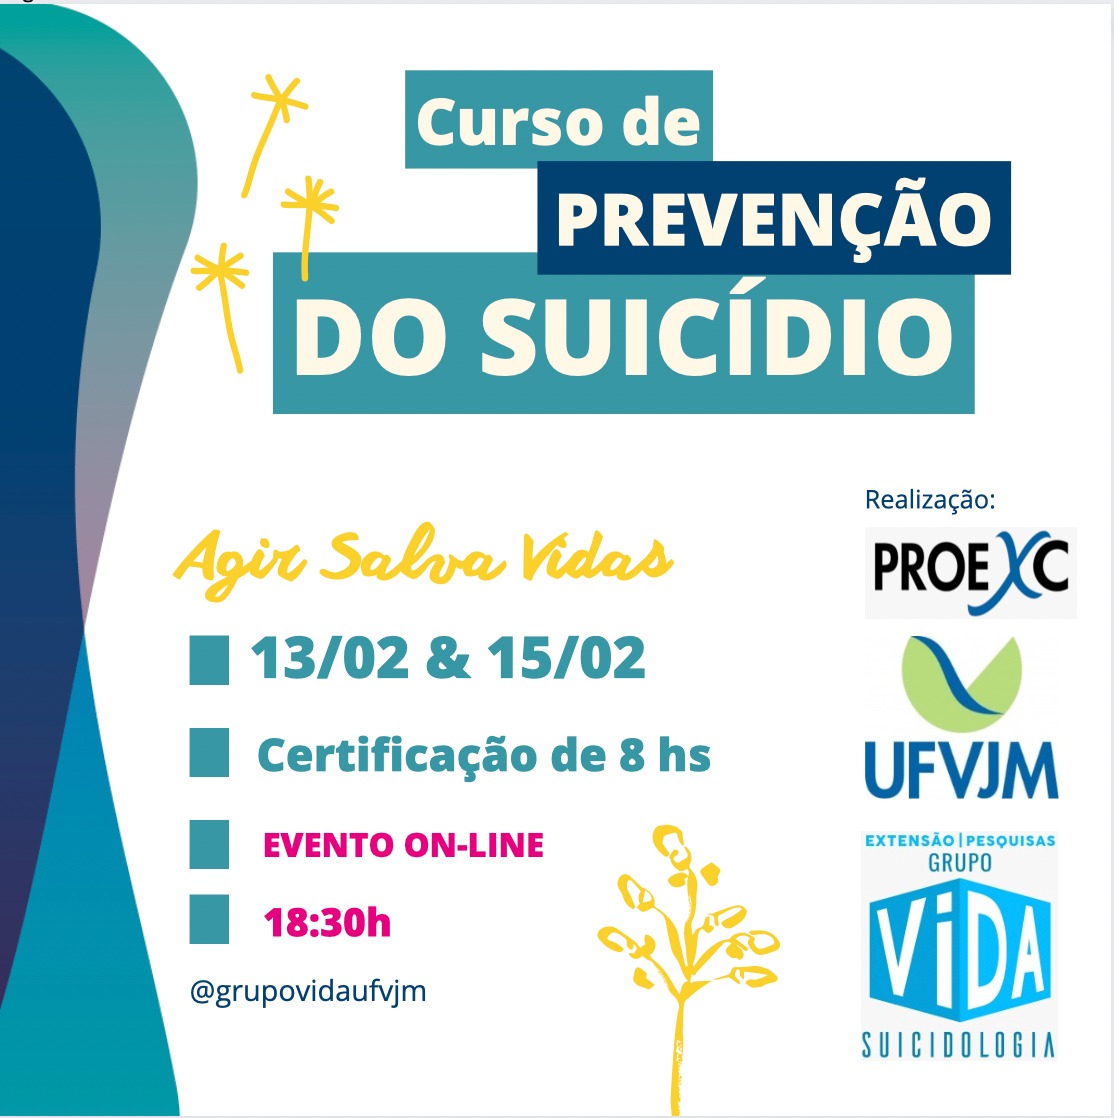 Grupo Vida-Suicidologia convida sociedade para curso sobre prevenção do suicídio